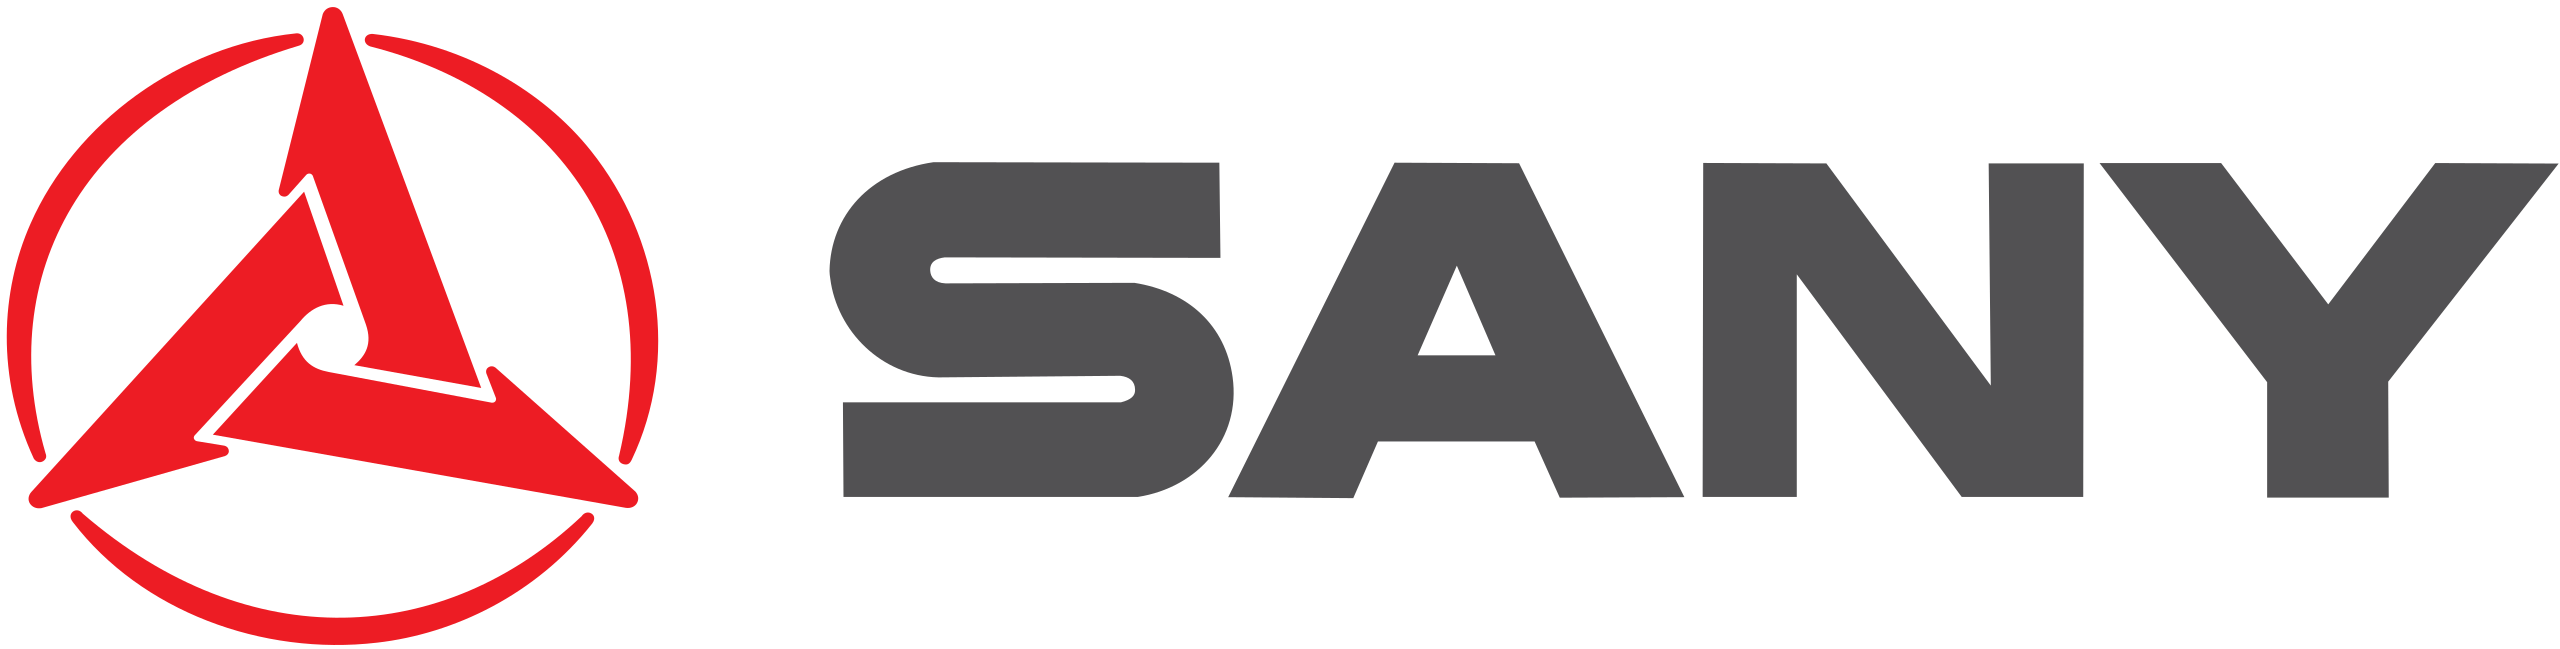 Sany_logo-horizontal.svg